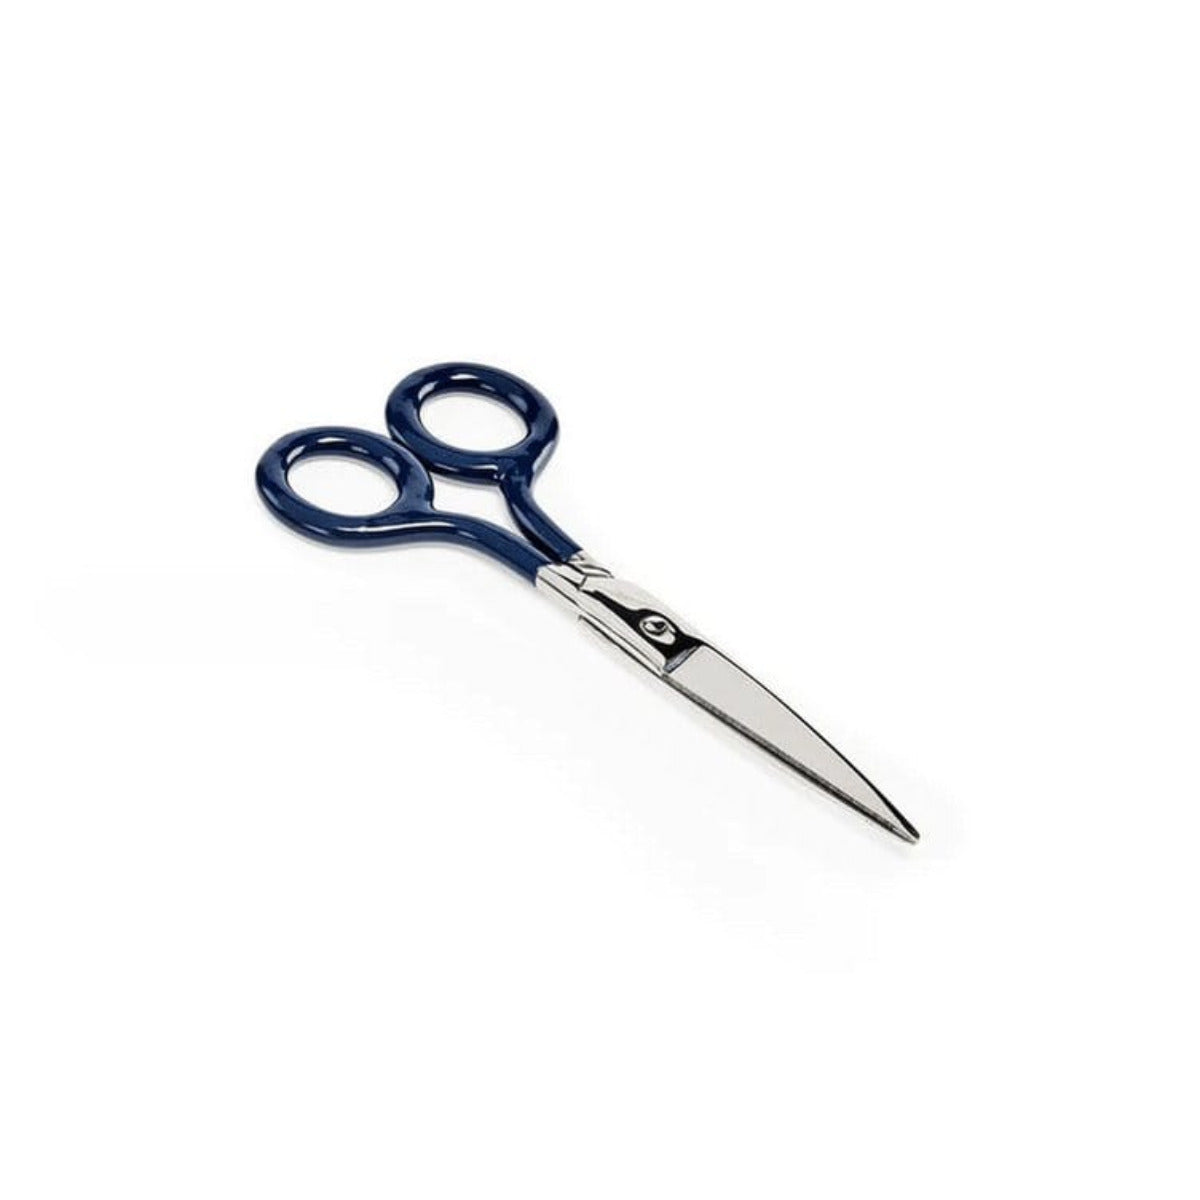 Penco - Stainless Scissors - Statonary & Office - DANSKmadeforrooms